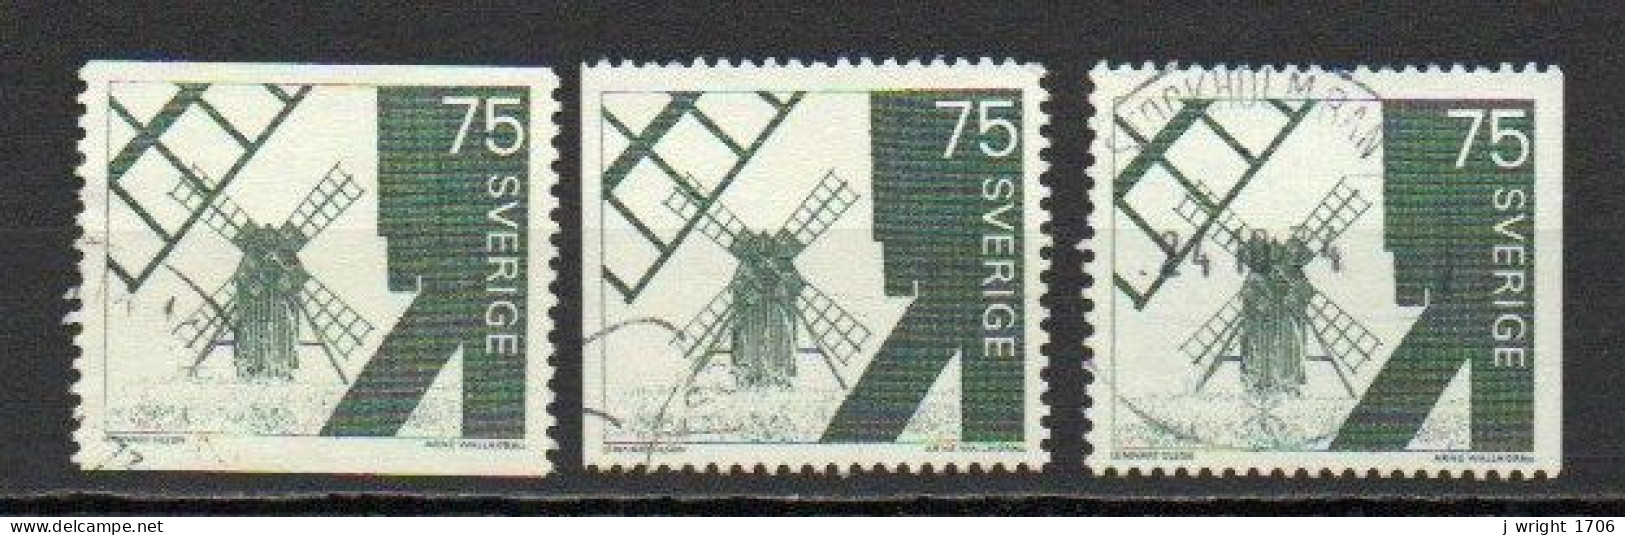 Sweden, 1971, Windmill Ölana Island, 75ö, USED - Usados